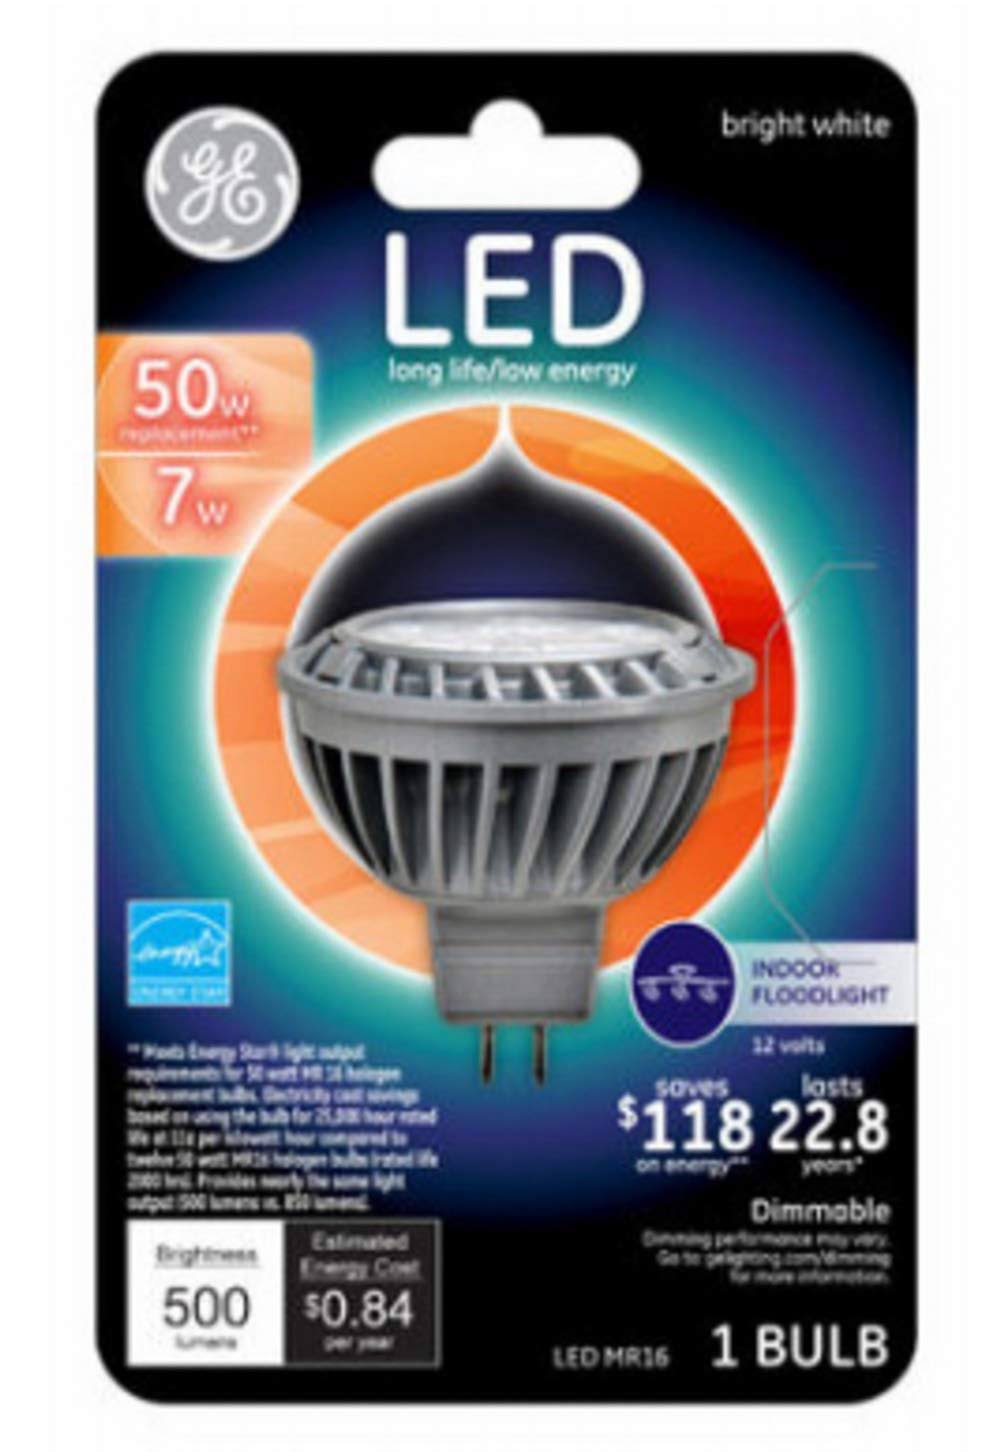 Ge Led Light Bulb - 7W